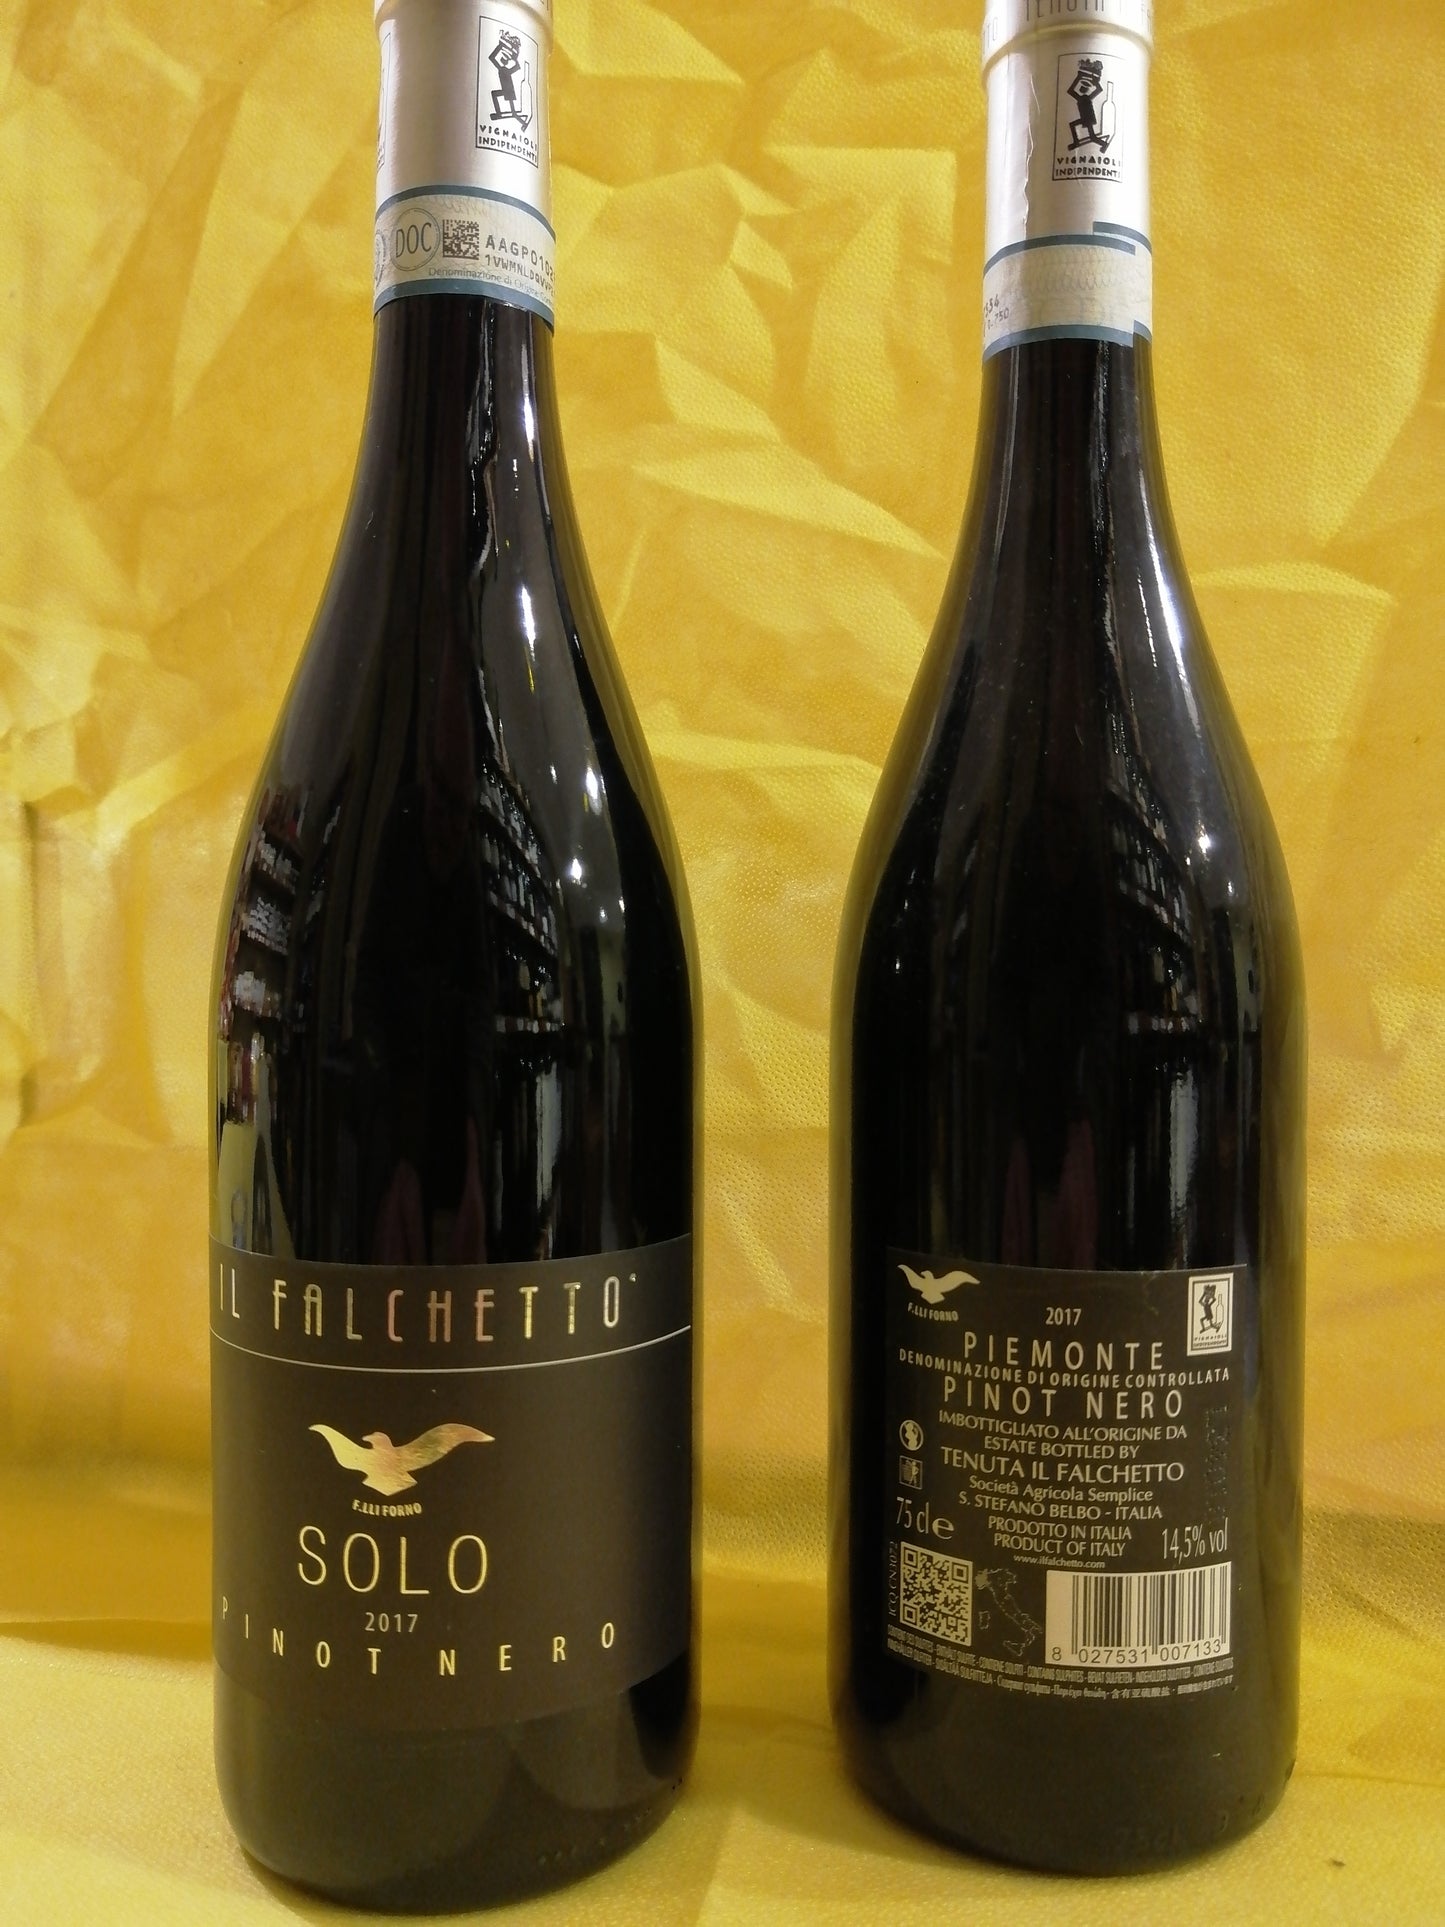 Pinot nero DOC "Solo" - Il Falchetto